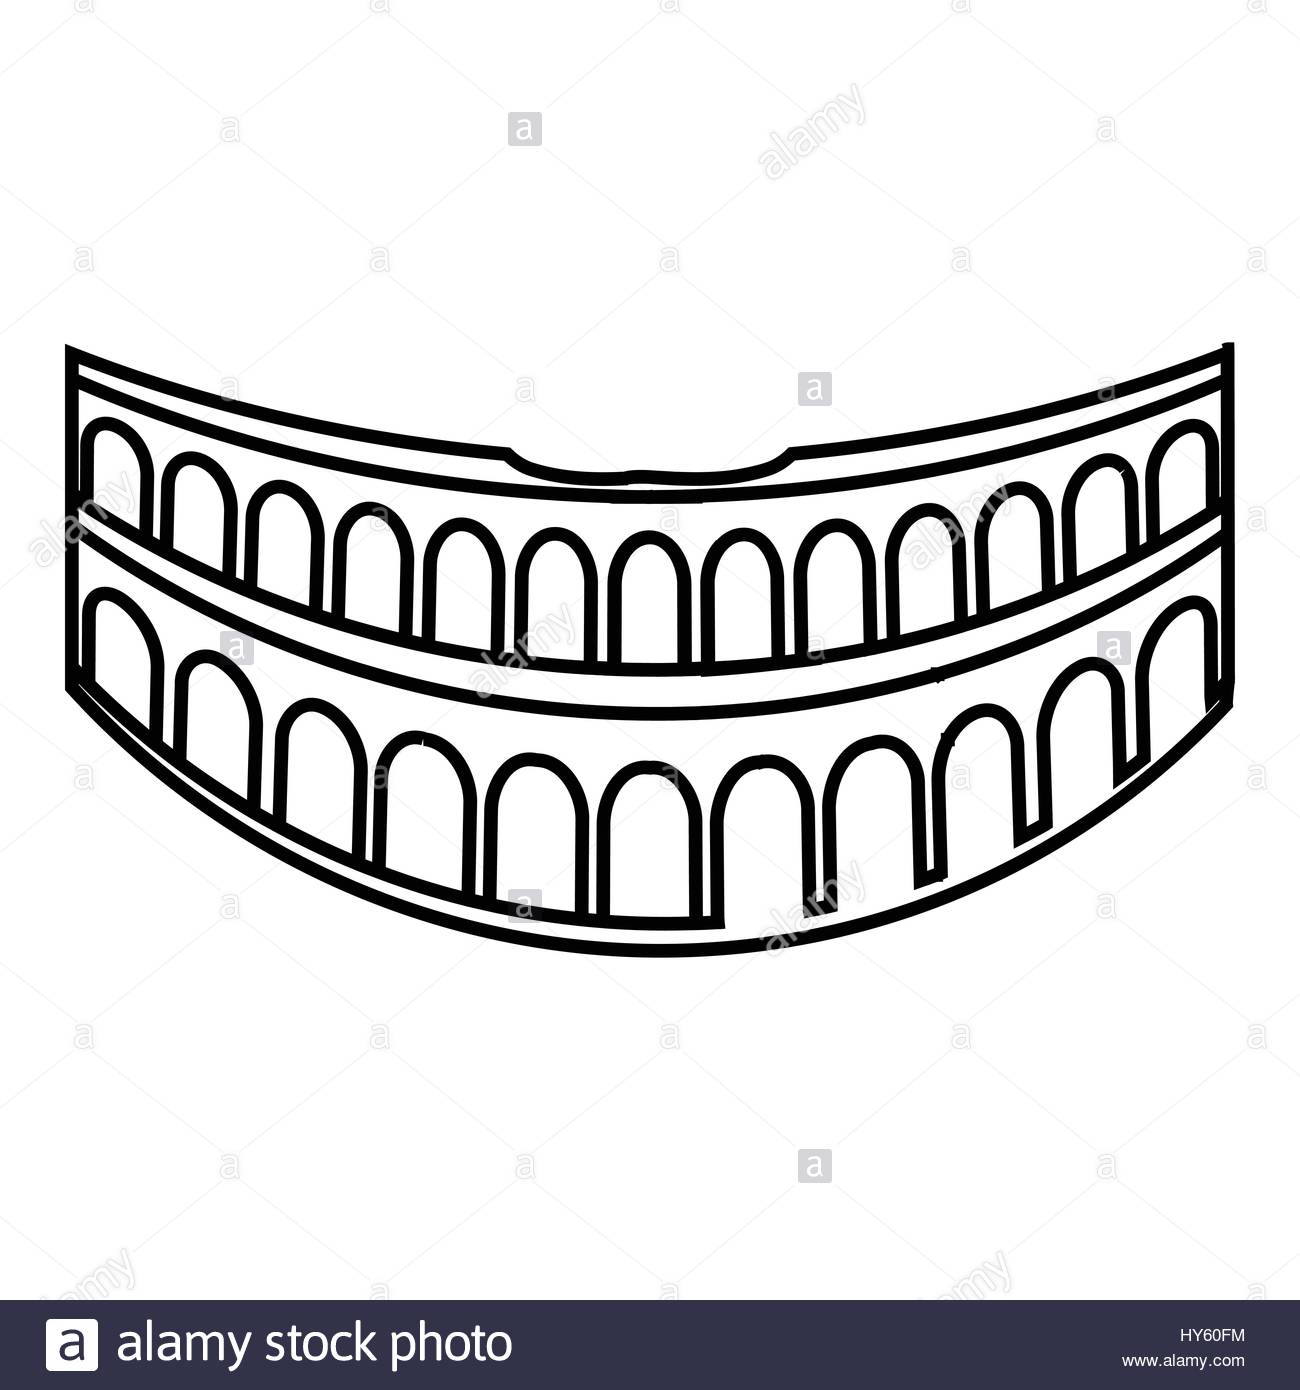 Colosseum icons | Noun Project